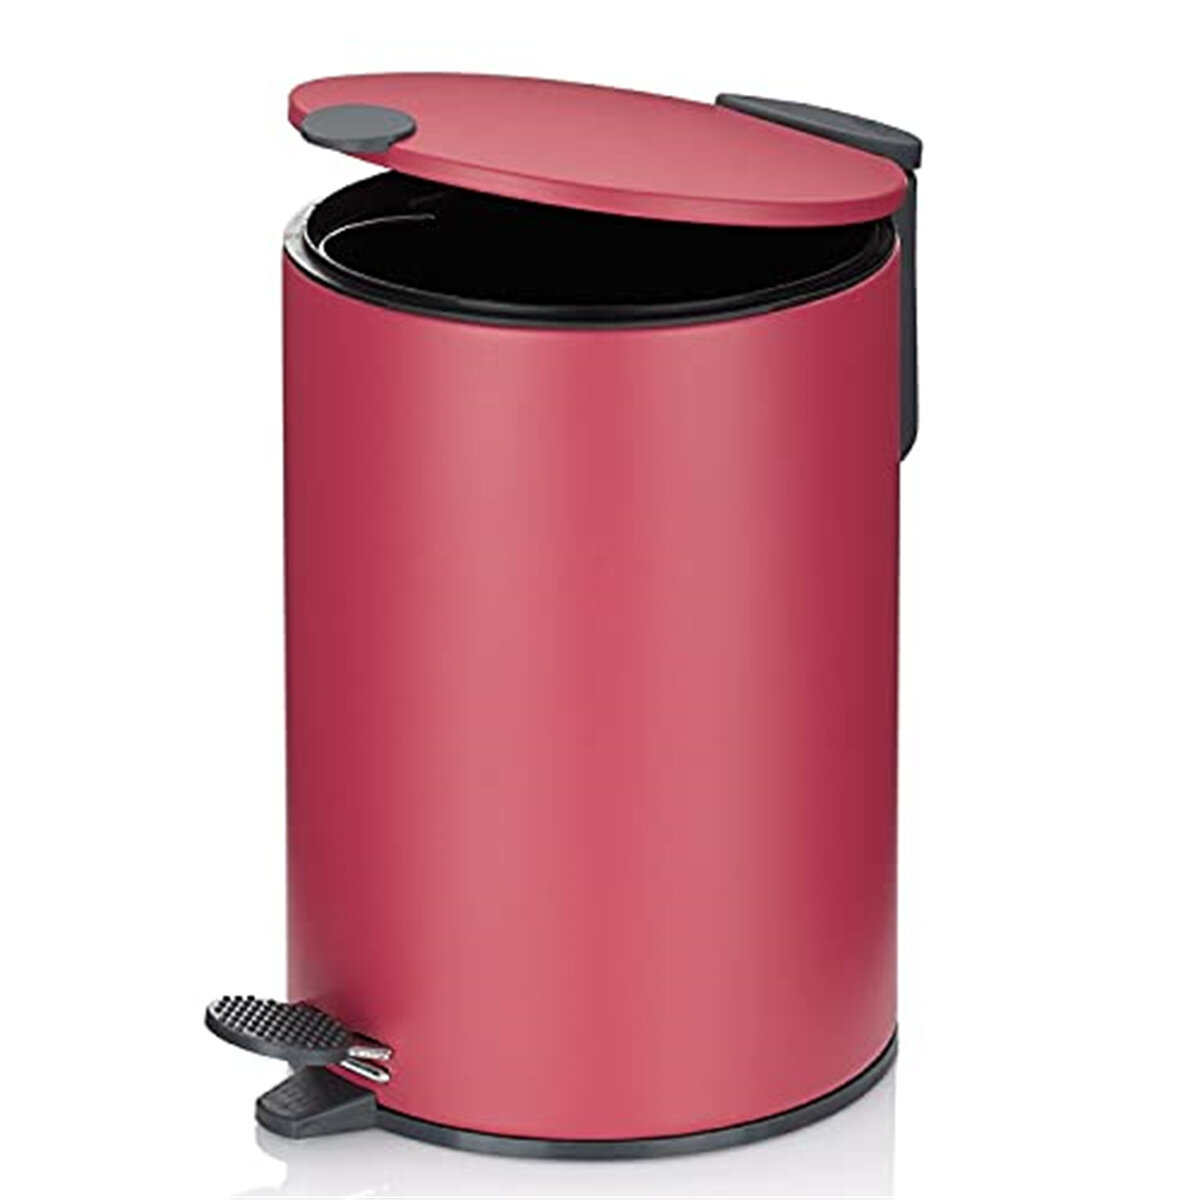 Basket Wastebaskets Hanging Trash Can Waste Bins Deskside Recycling pink 